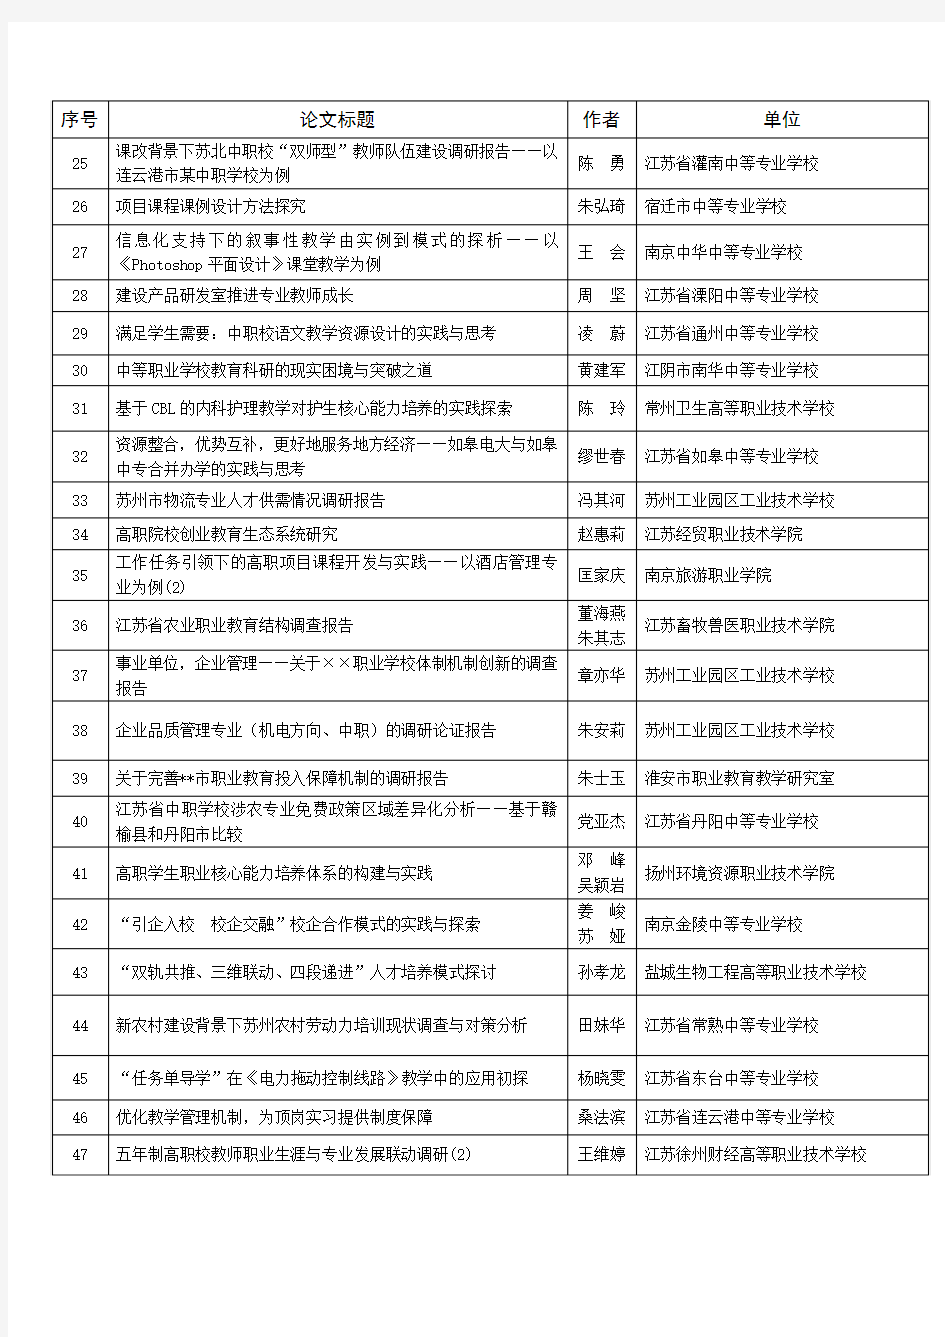 第七届江苏职业教育论坛征文获奖名单